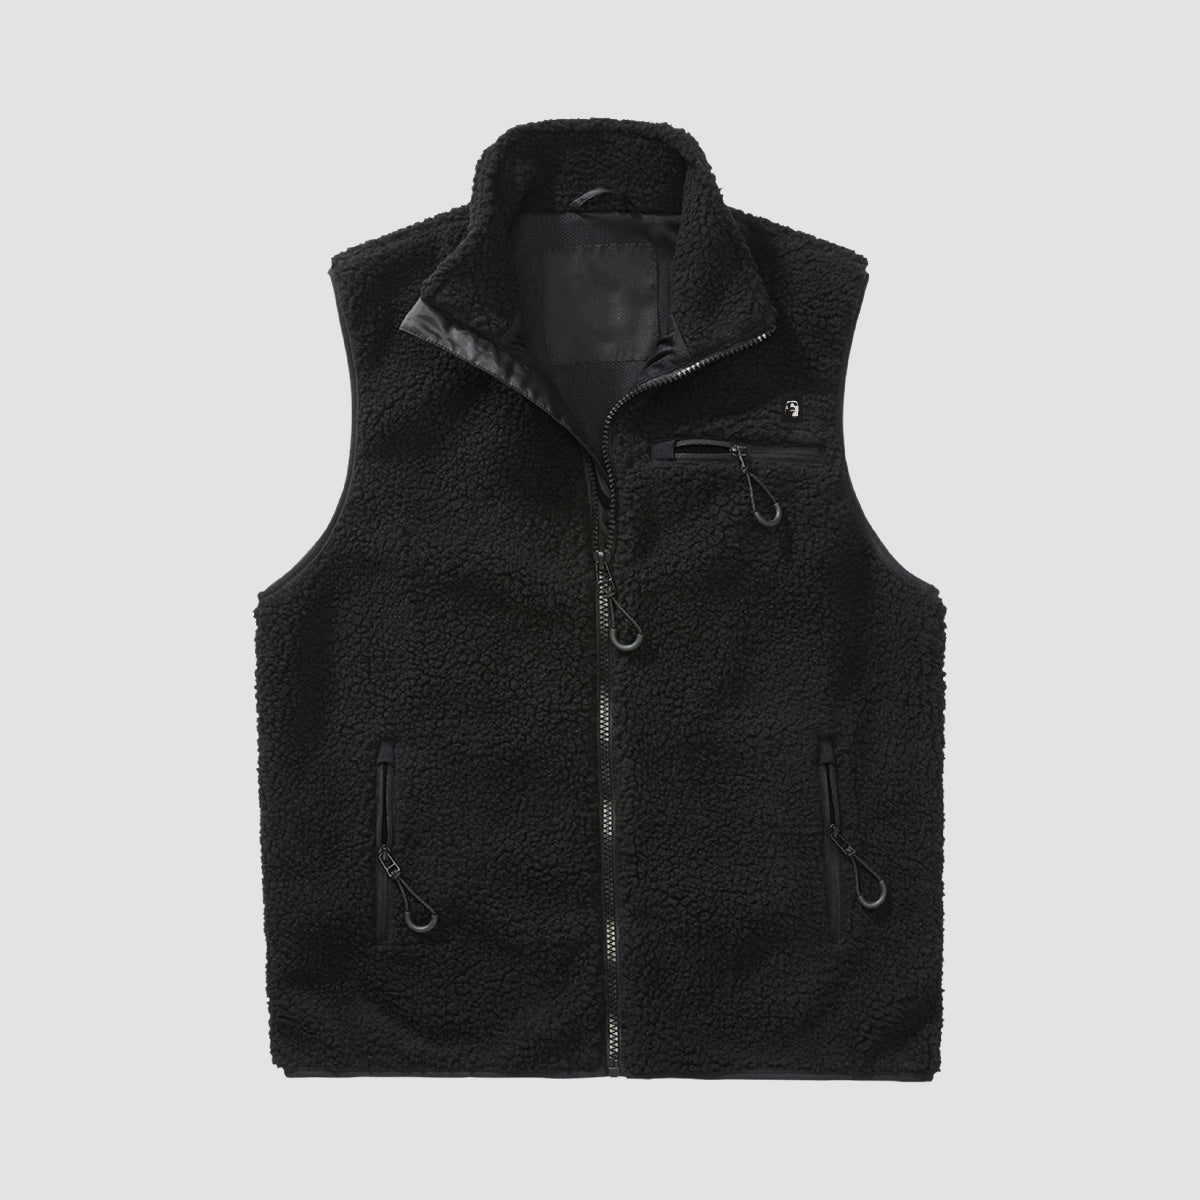 Heathen Wall of Sleep Fleece Vest Black